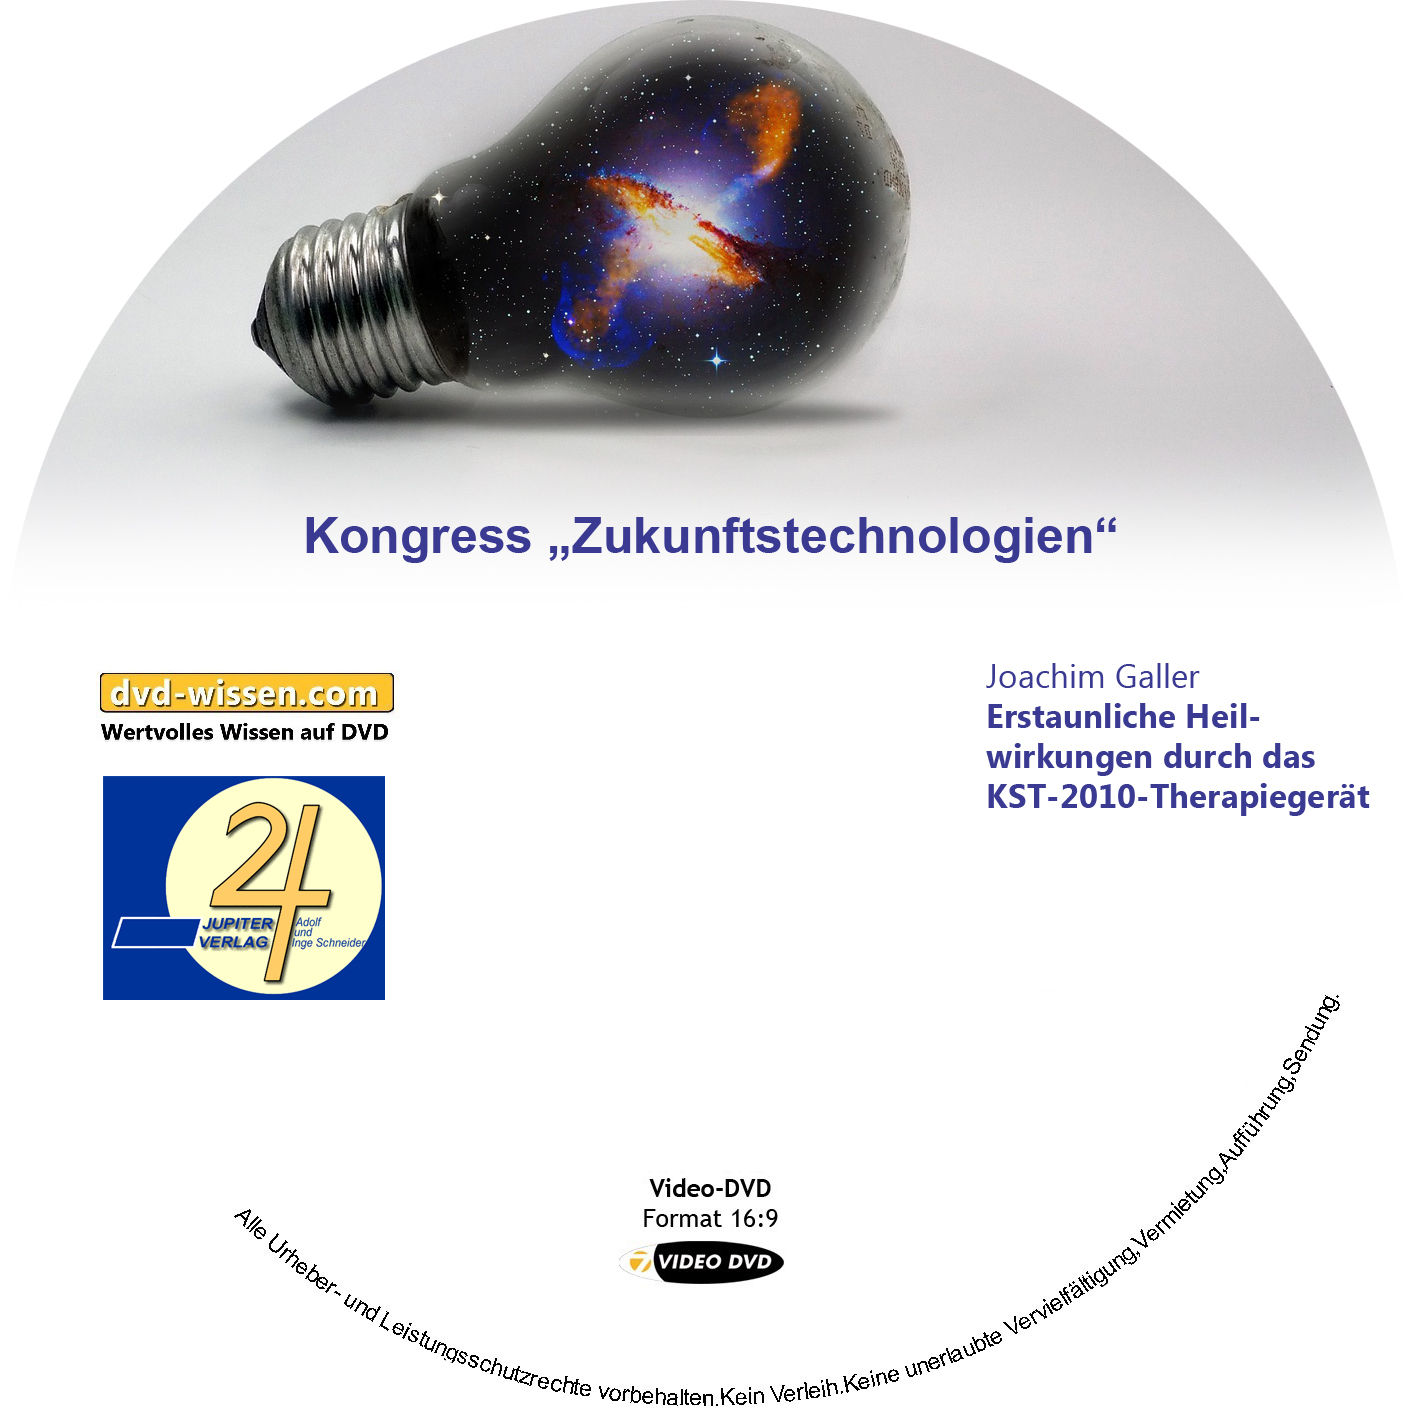 Joachim Galler: Erstaunliche Heilwirkungen durch das KST-2010-Therapiegerät